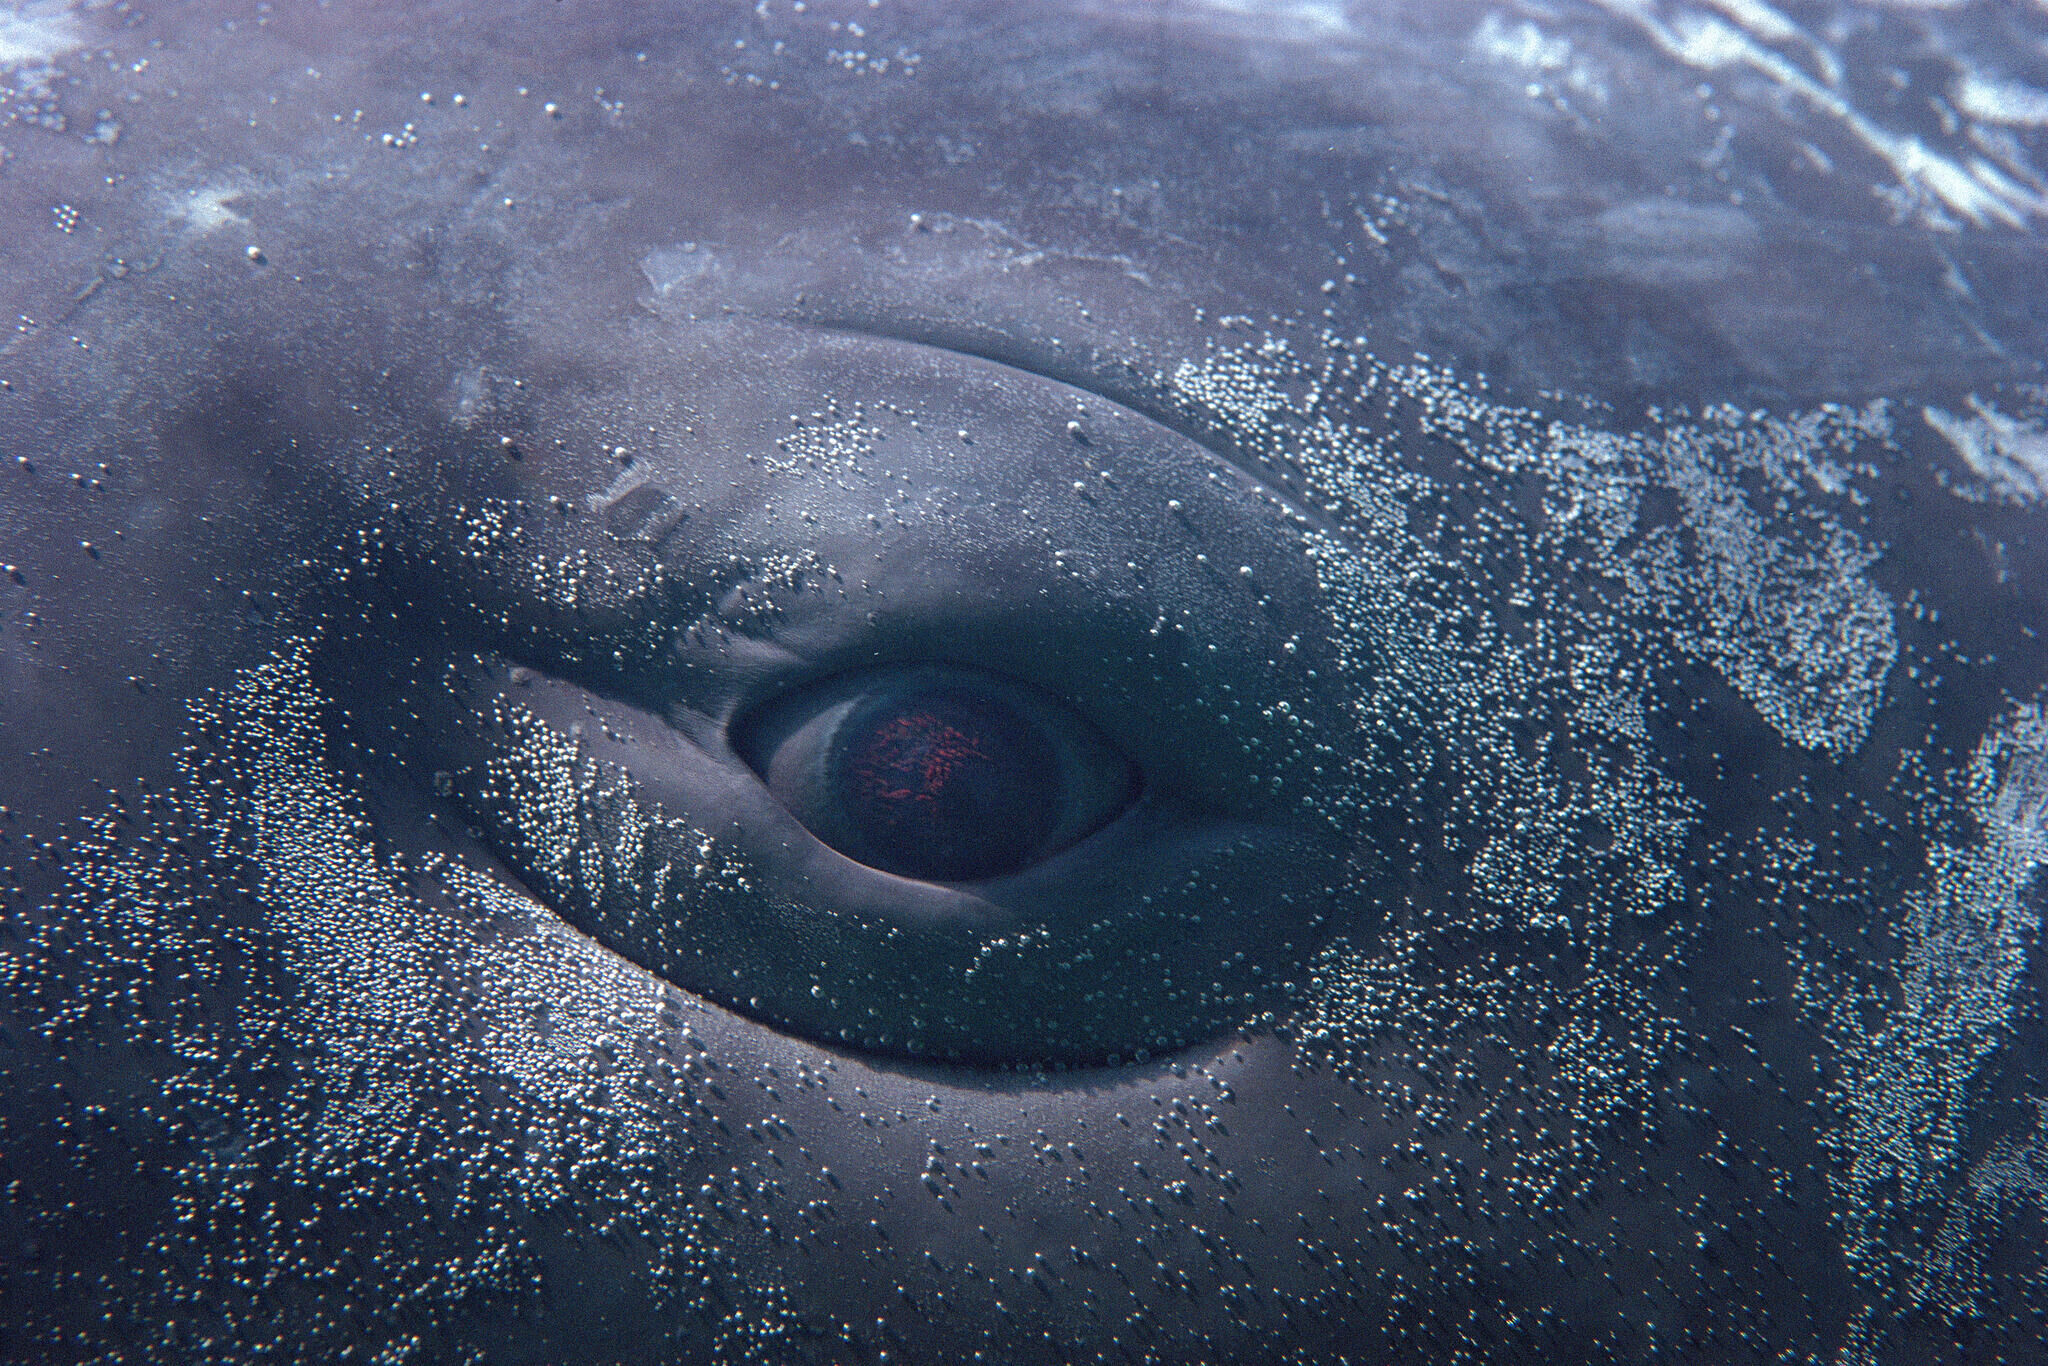 An eye of a whale